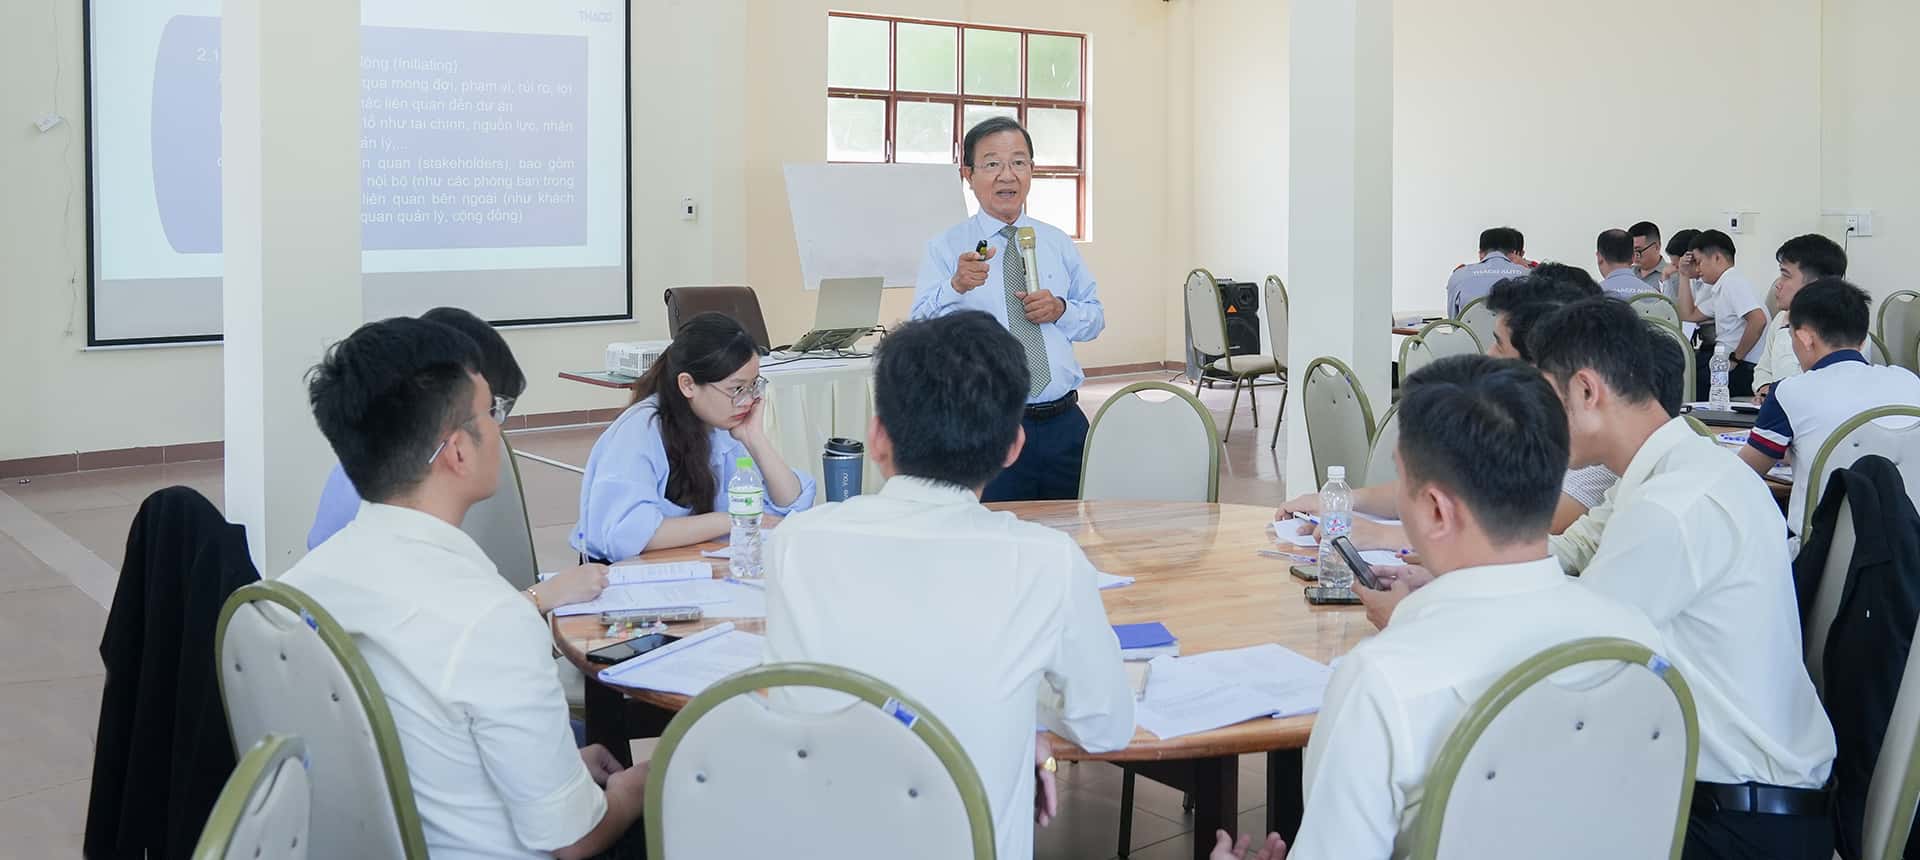 Gần 200 nhân sự là quản lý, chuyên viên thuộc các công ty, đơn vị tại THACO Chu Lai tham gia khóa đào tạo